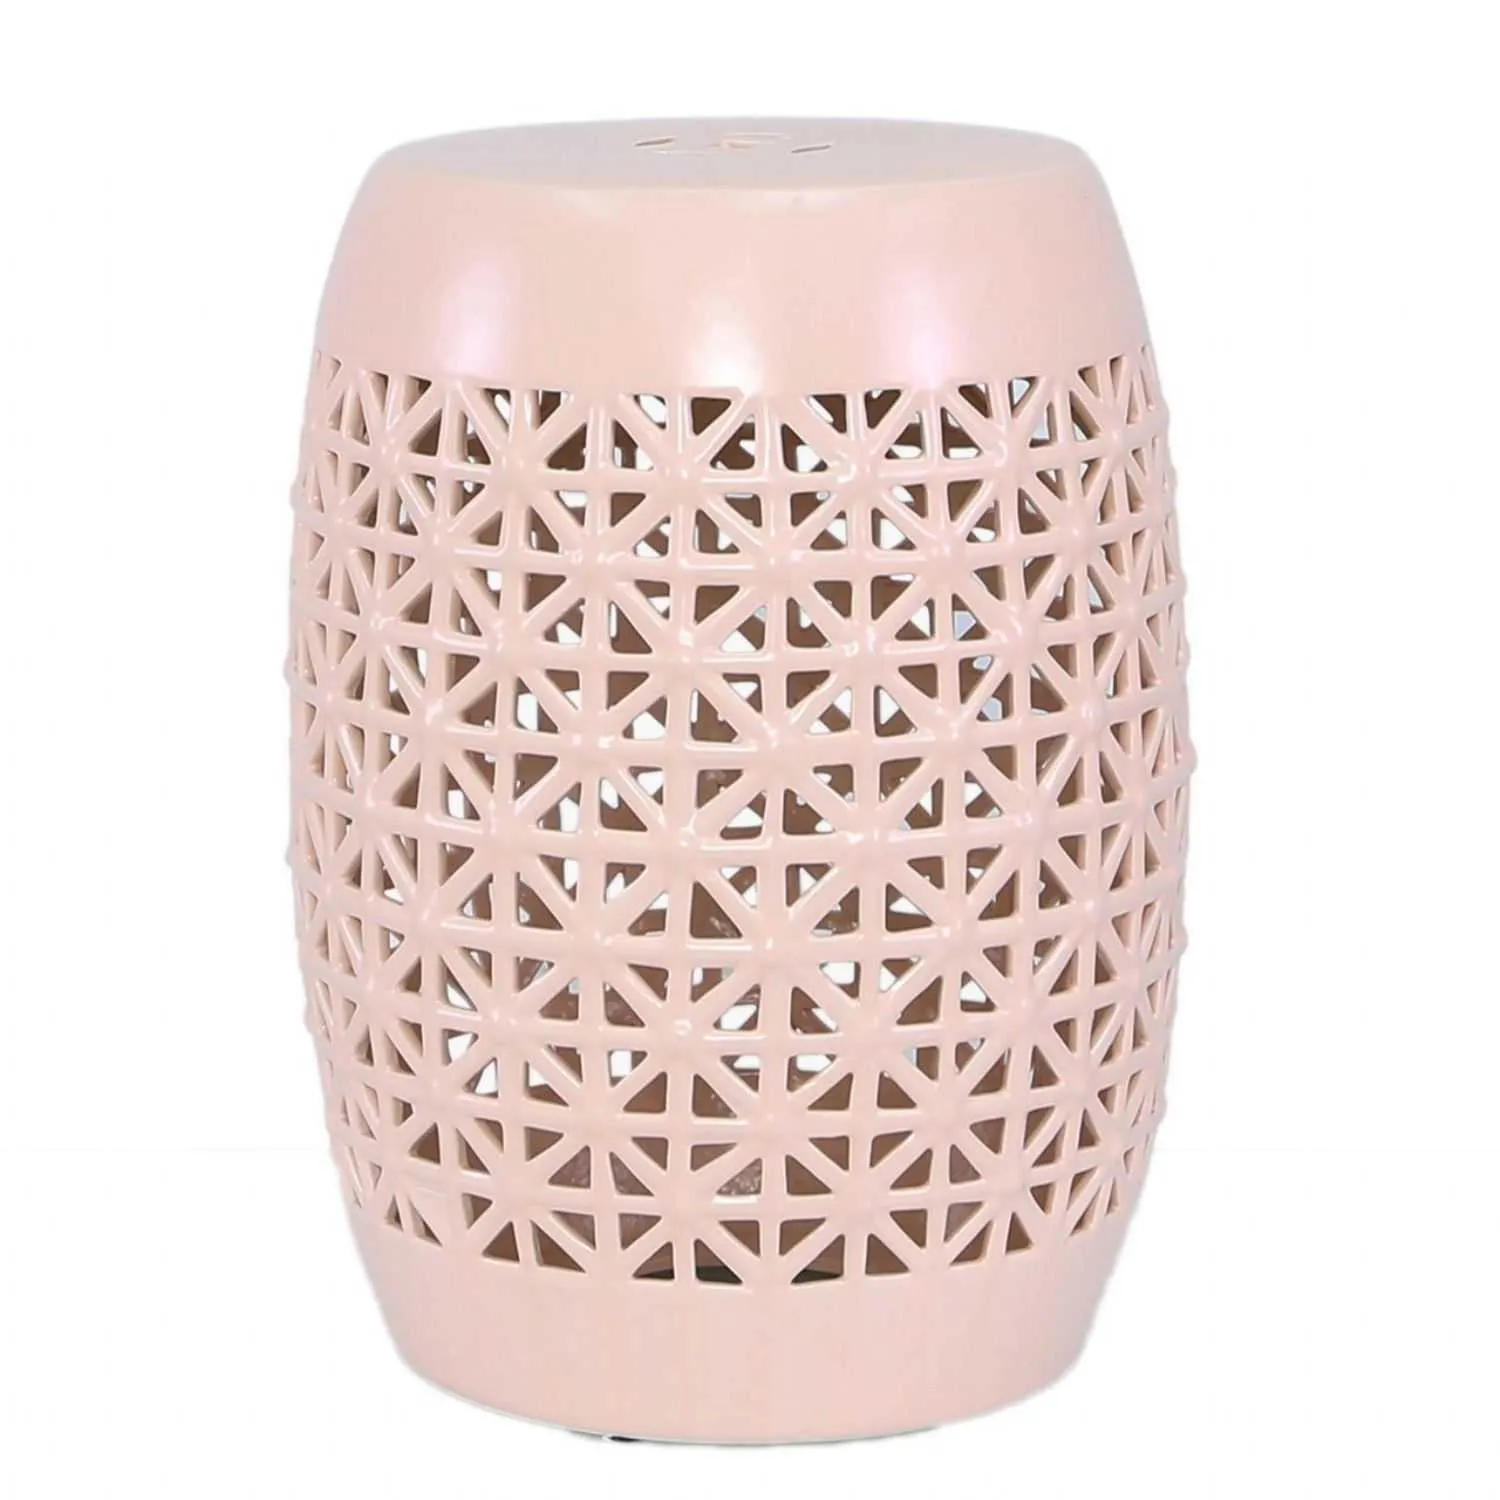 46cm Pink Weave Design Ceramic Stool